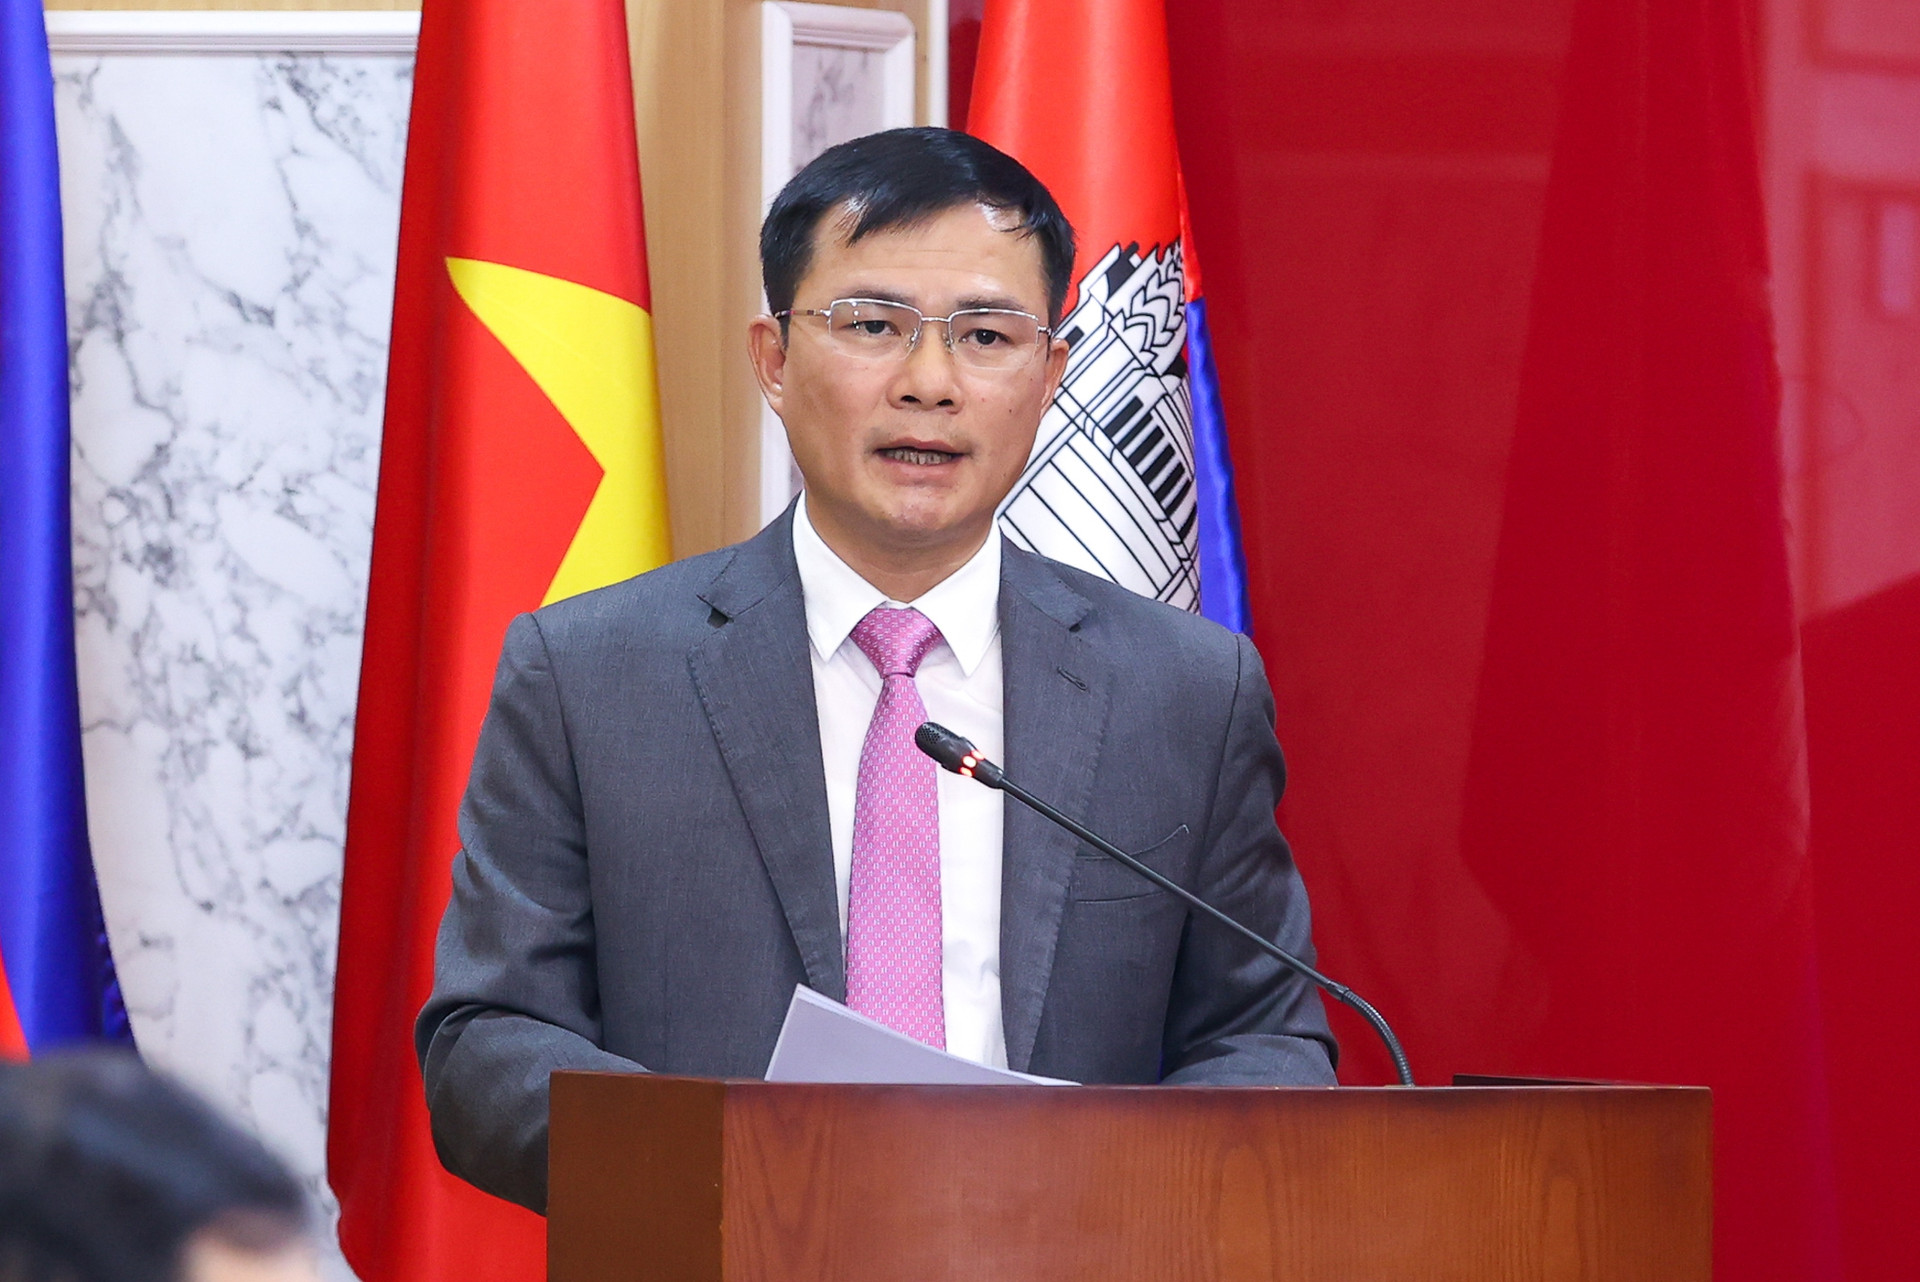 Thủ tướng thăm doanh nghiệp viễn thông lớn nhất Campuchia do Việt Nam đầu tư - Ảnh 2.